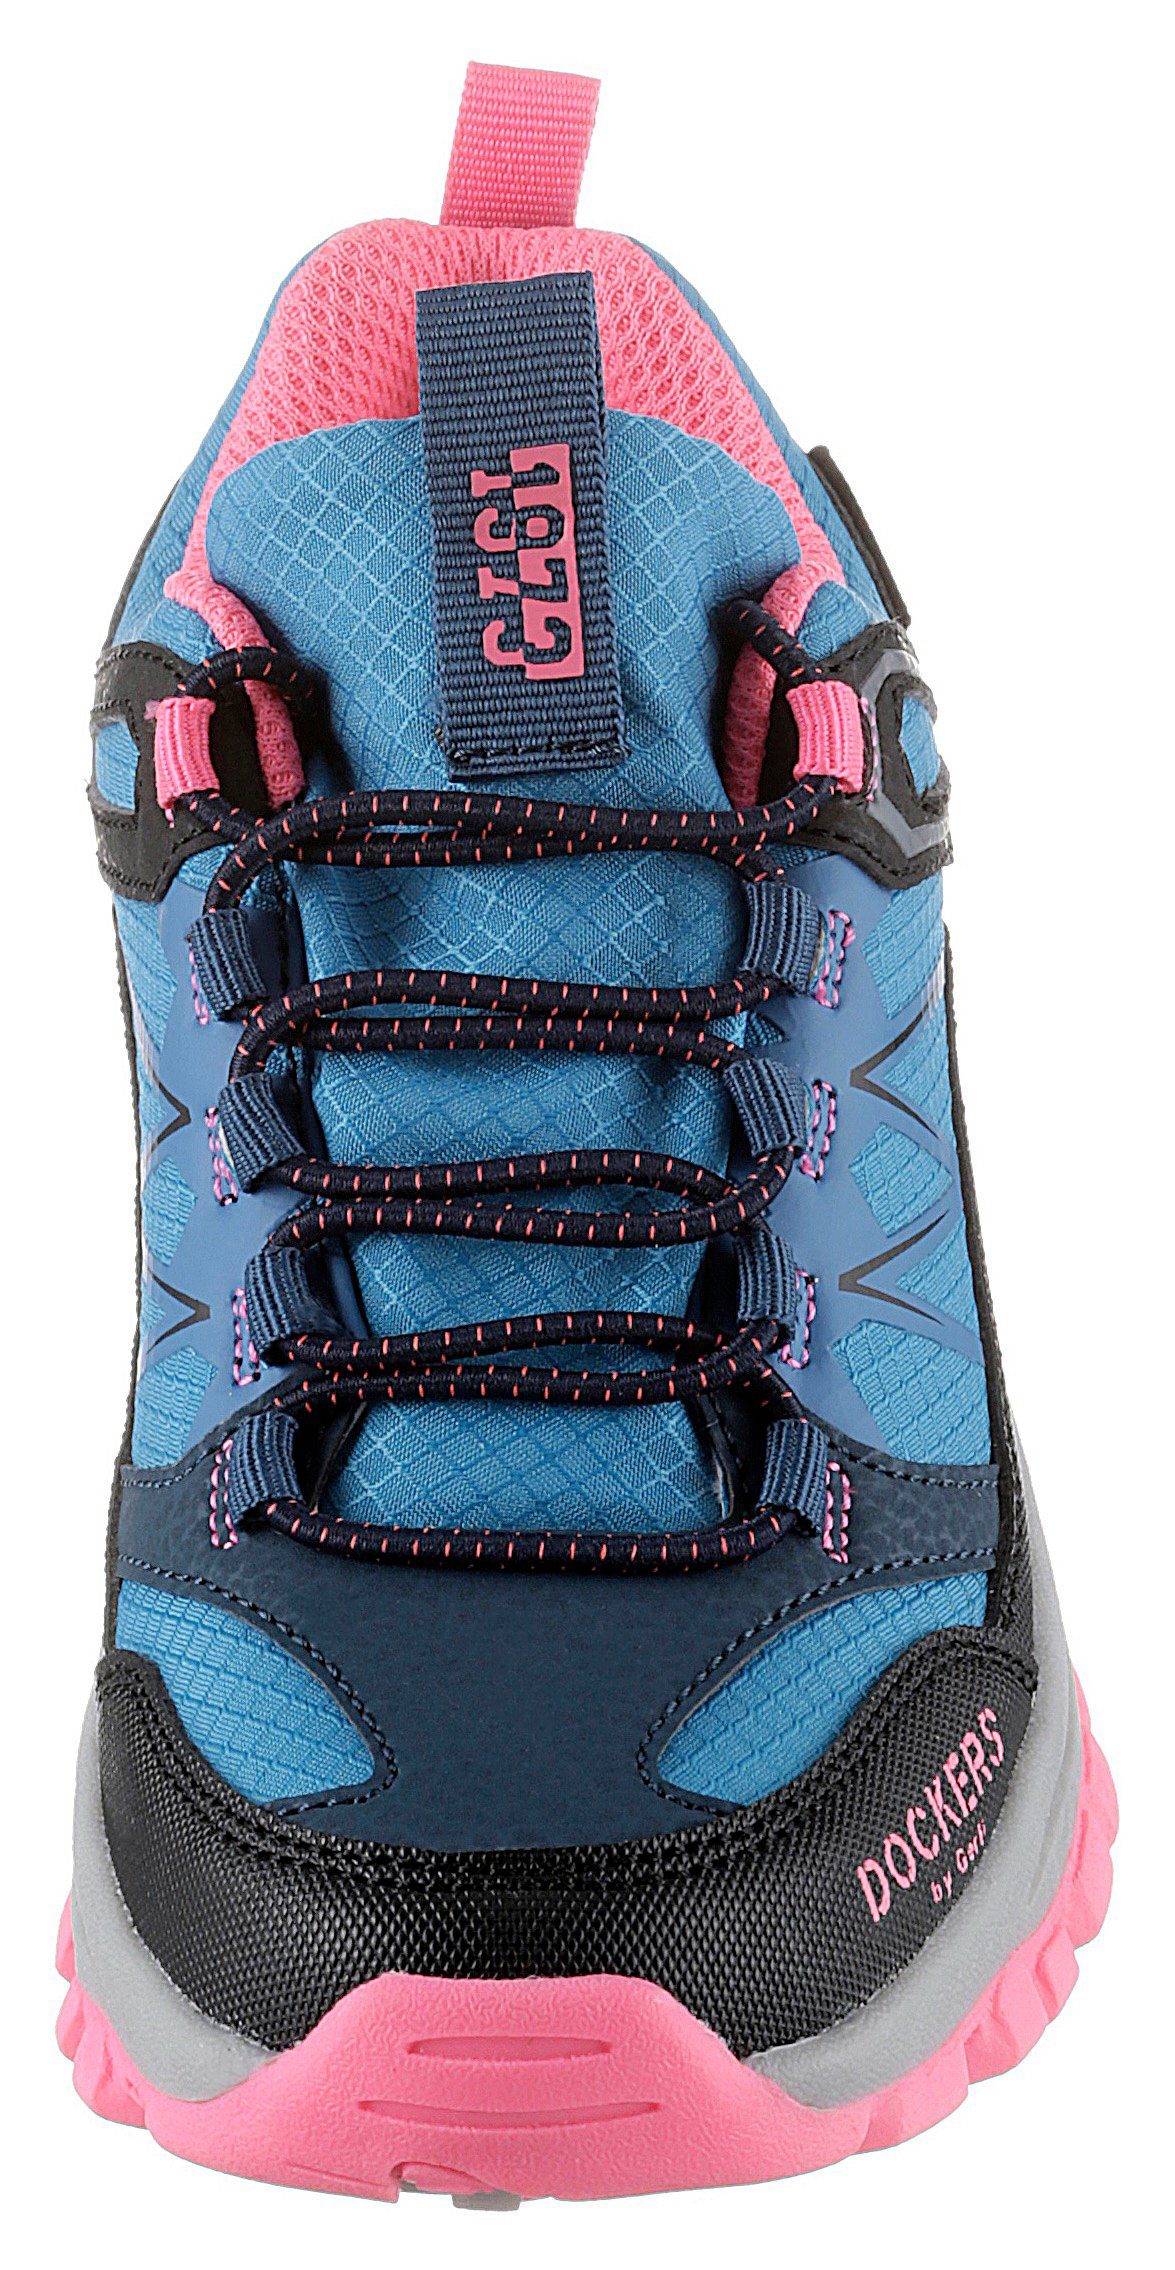 Sneaker by Schnellverschluss mit Gerli Slip-On Dockers blau-schwarz-pink